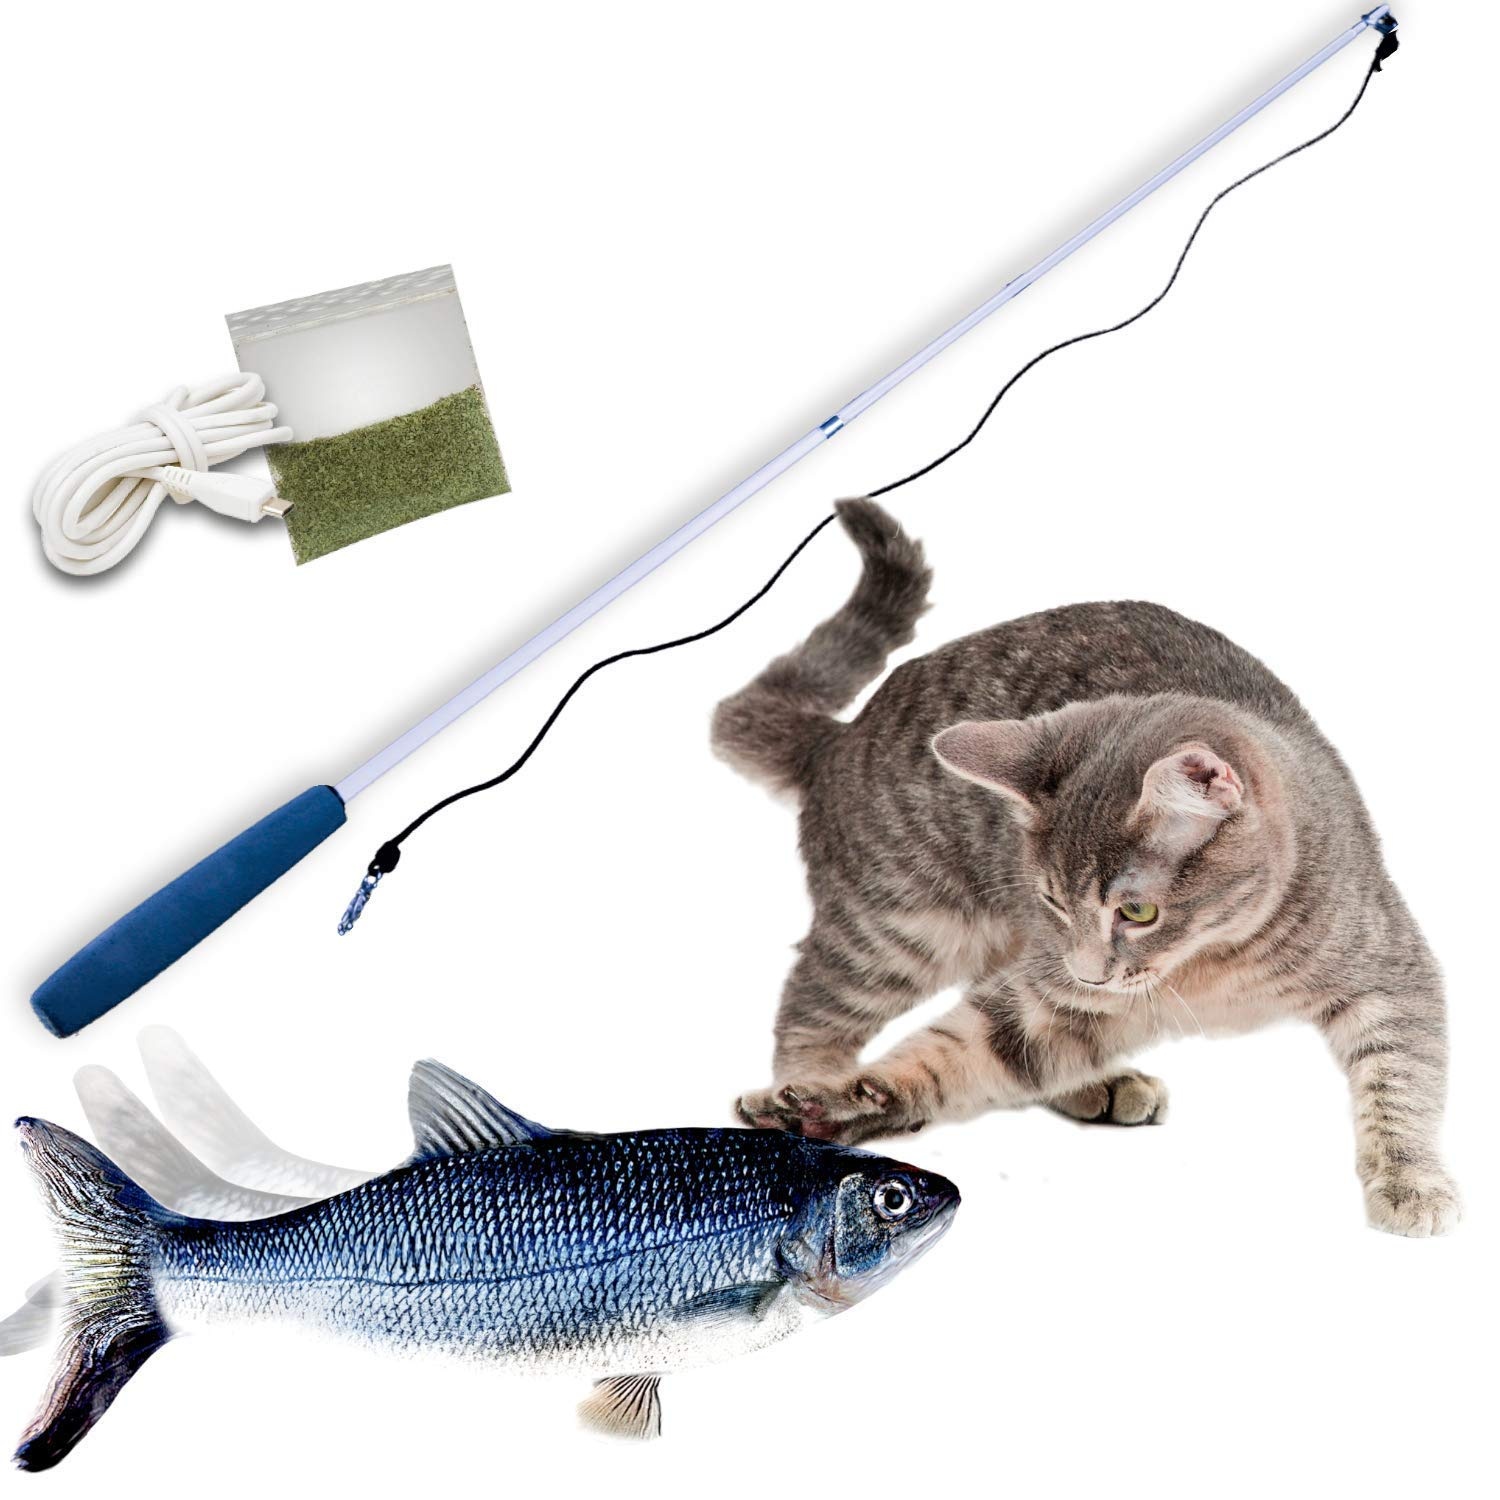 Mediashop Flippity Fish - elektrisches Katzenspielzeug - Katzenminze - wiederaufladbar mit USB Kabel - Verschiedene Geschwindigkeitsstufen - mit Spielangel | Das Original aus dem TV